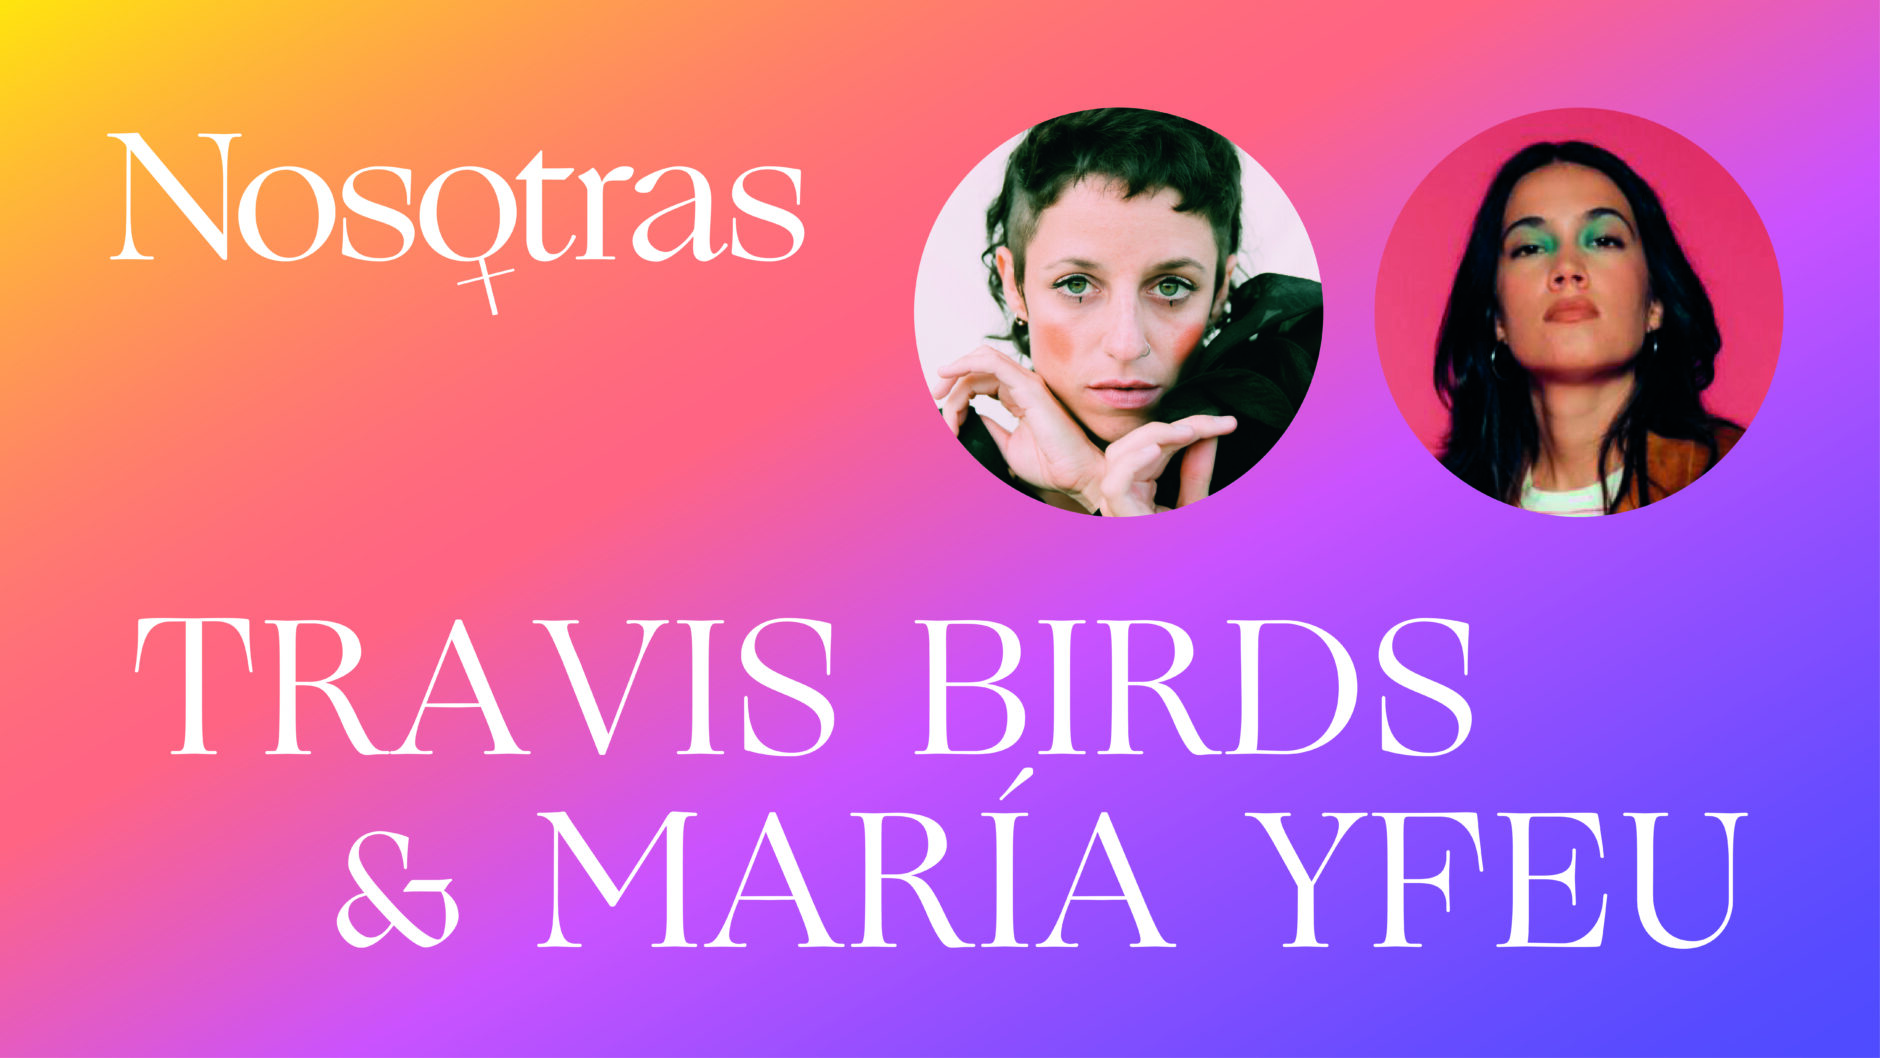 CICLO NOSOTRAS - MARIA YFEU & TRAVIS BIRD 1